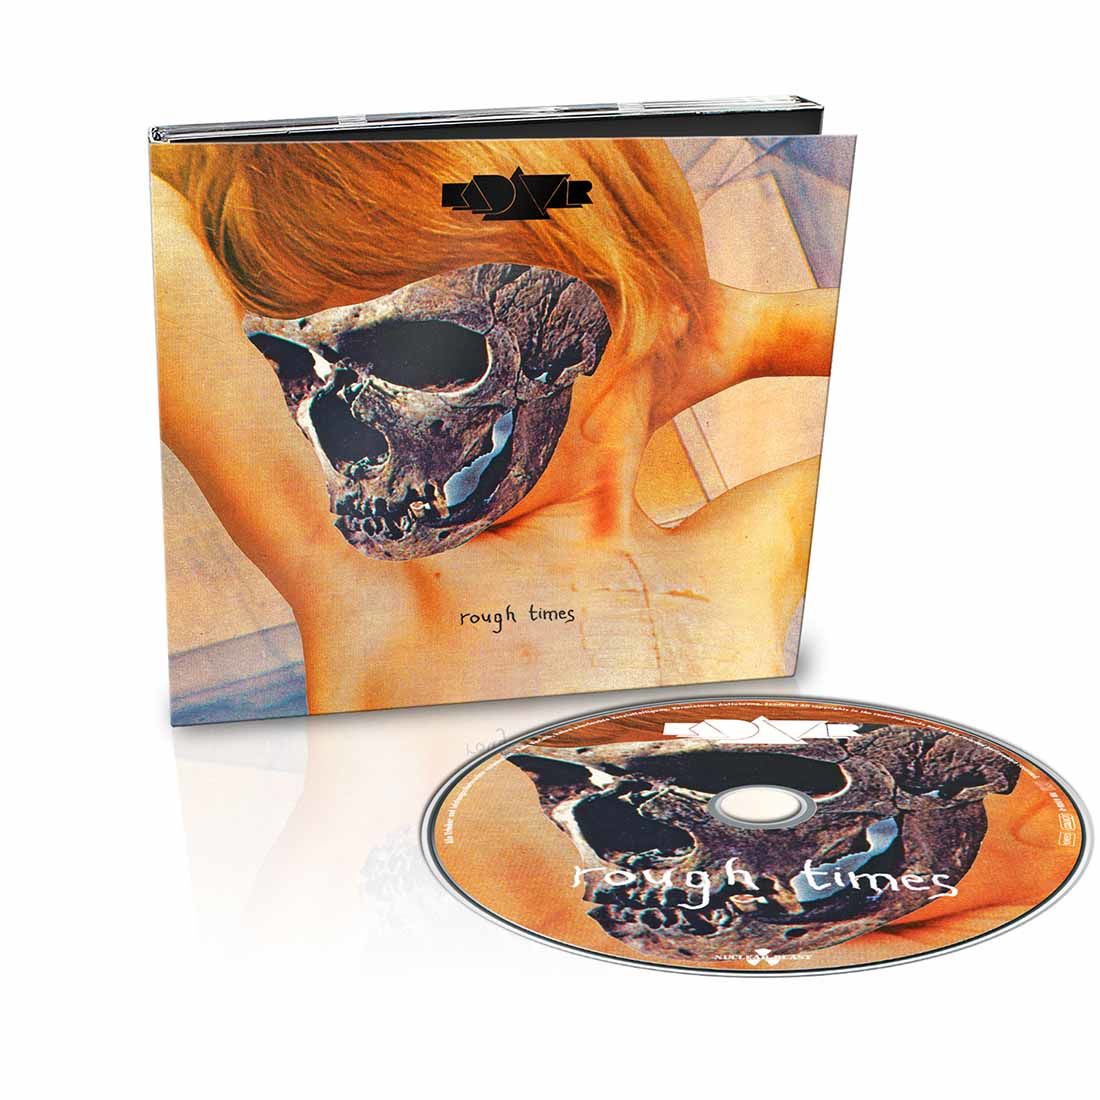 KADAVAR - Rough Times: Limited Edition CD